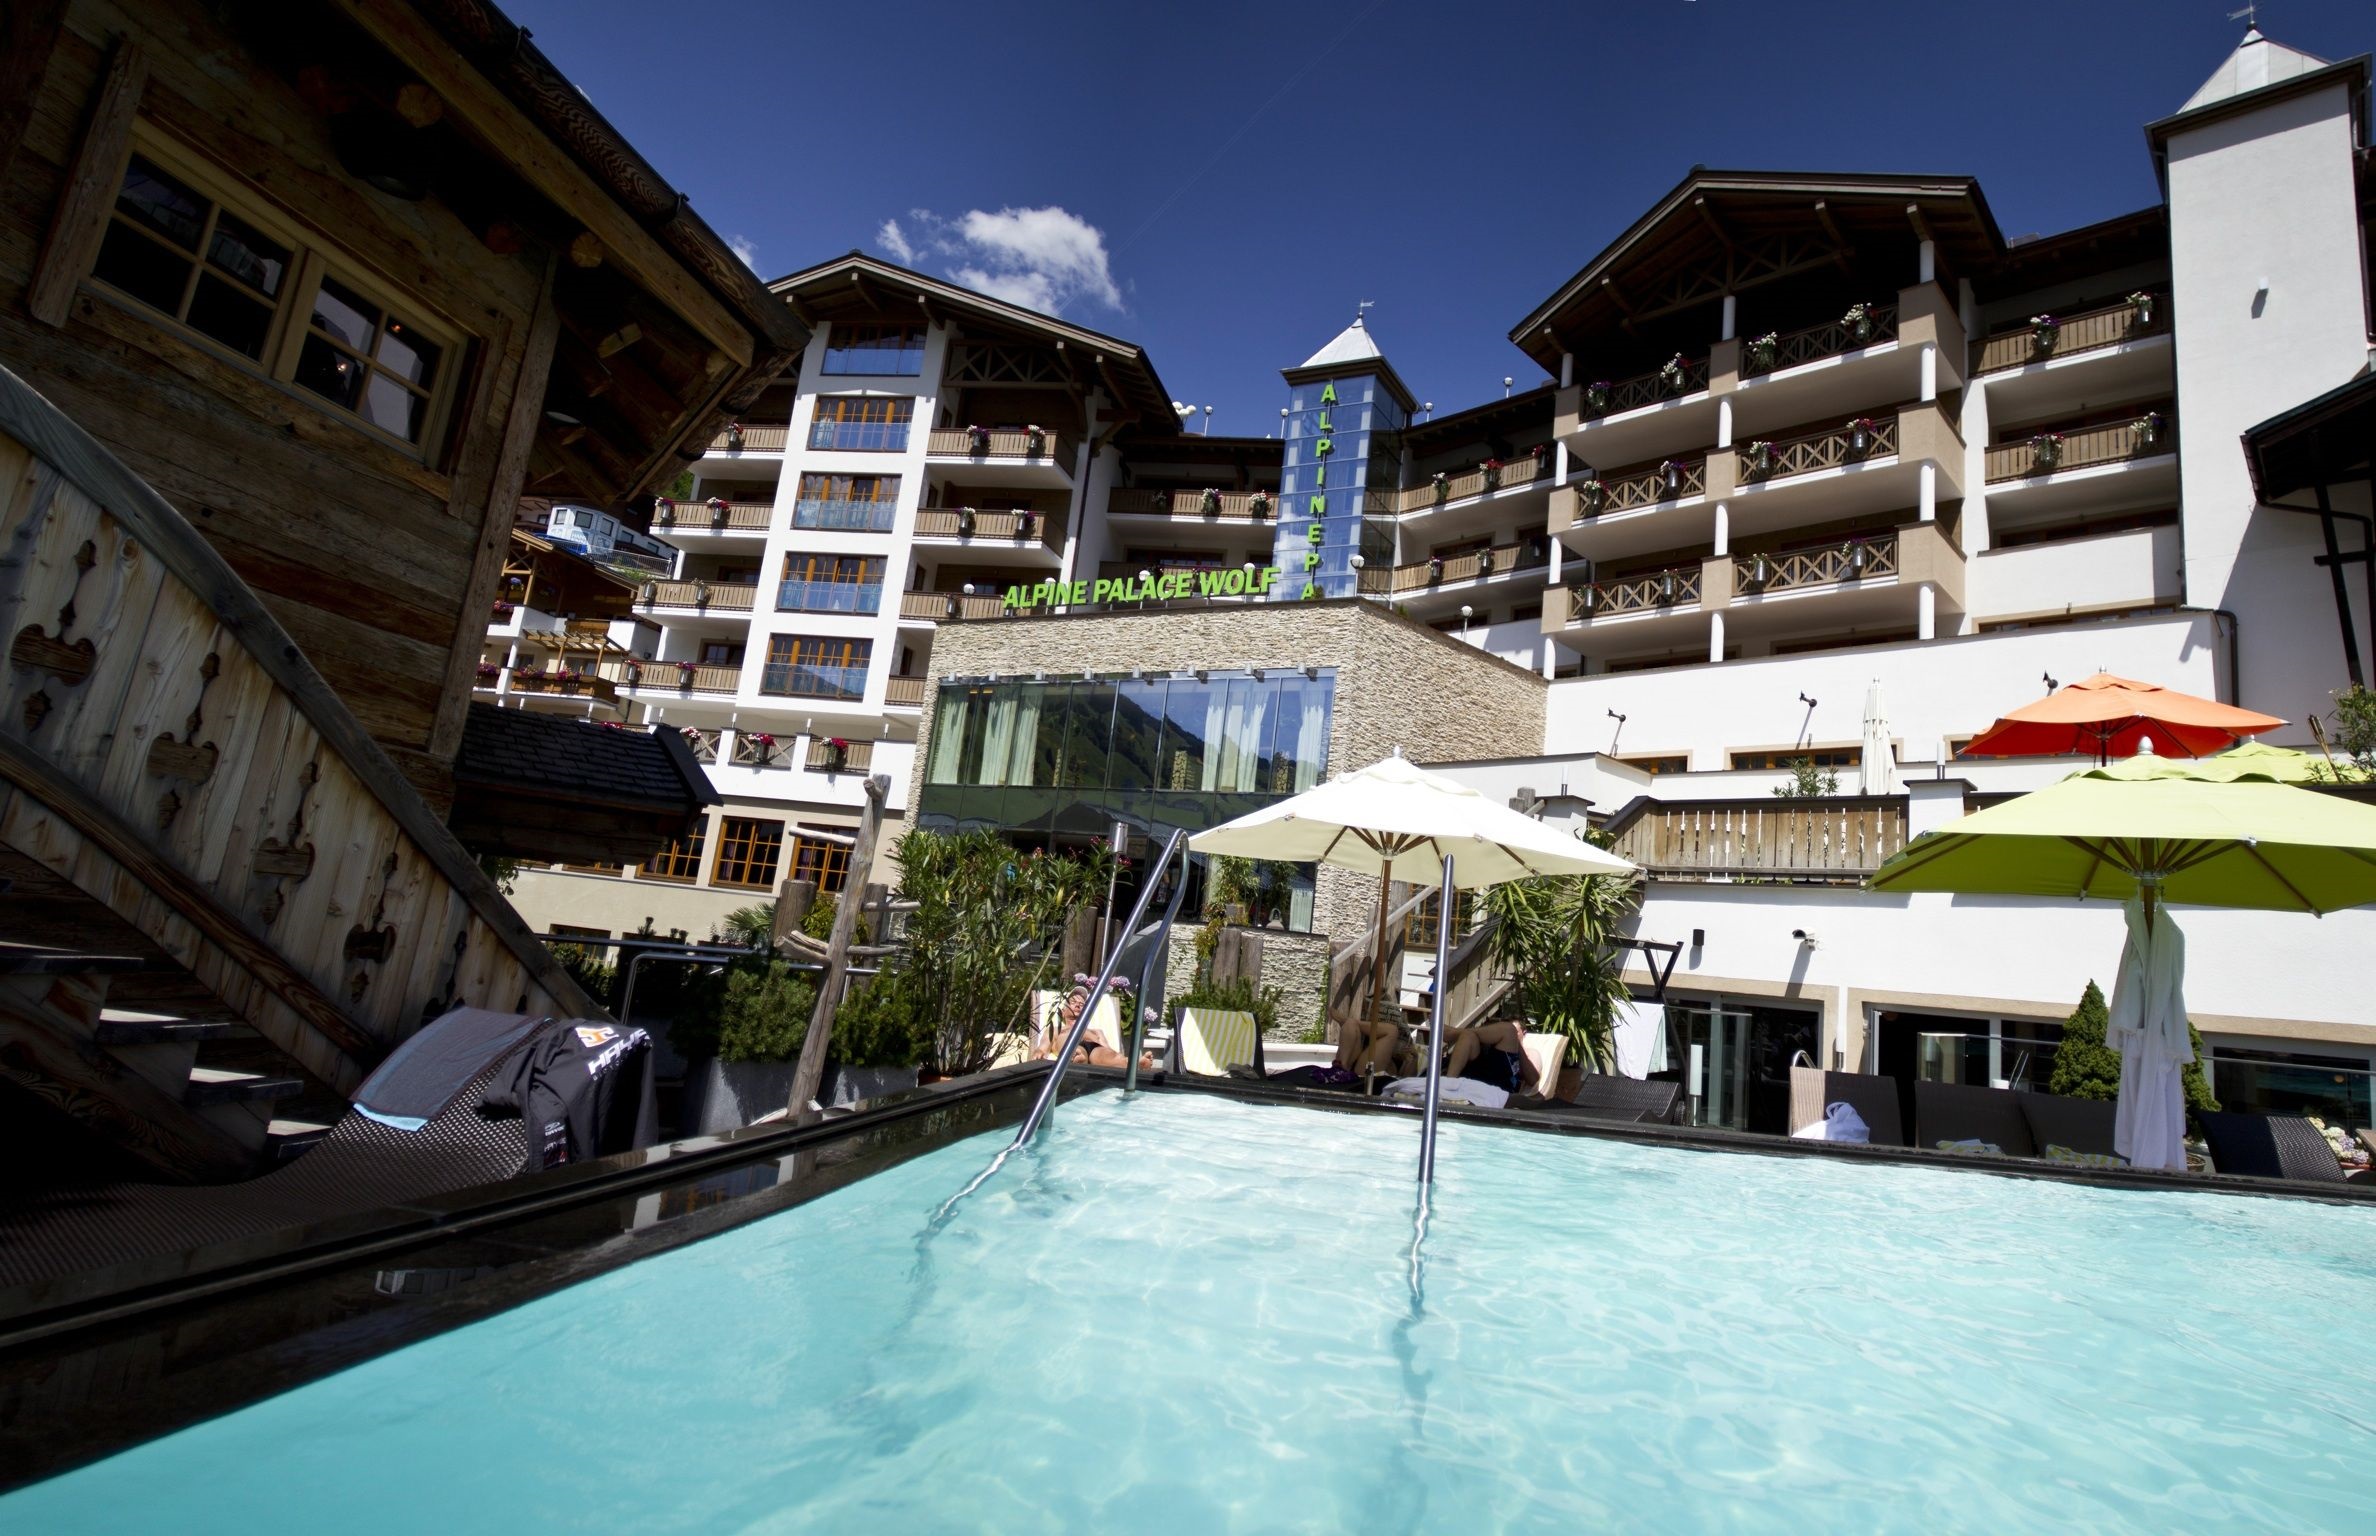 Hotel Alpine Palace – Feel royal, enjoy Lässig! In Österreichs lässigster Bike- und Wanderregion in Saalbach-Hinterglemm.